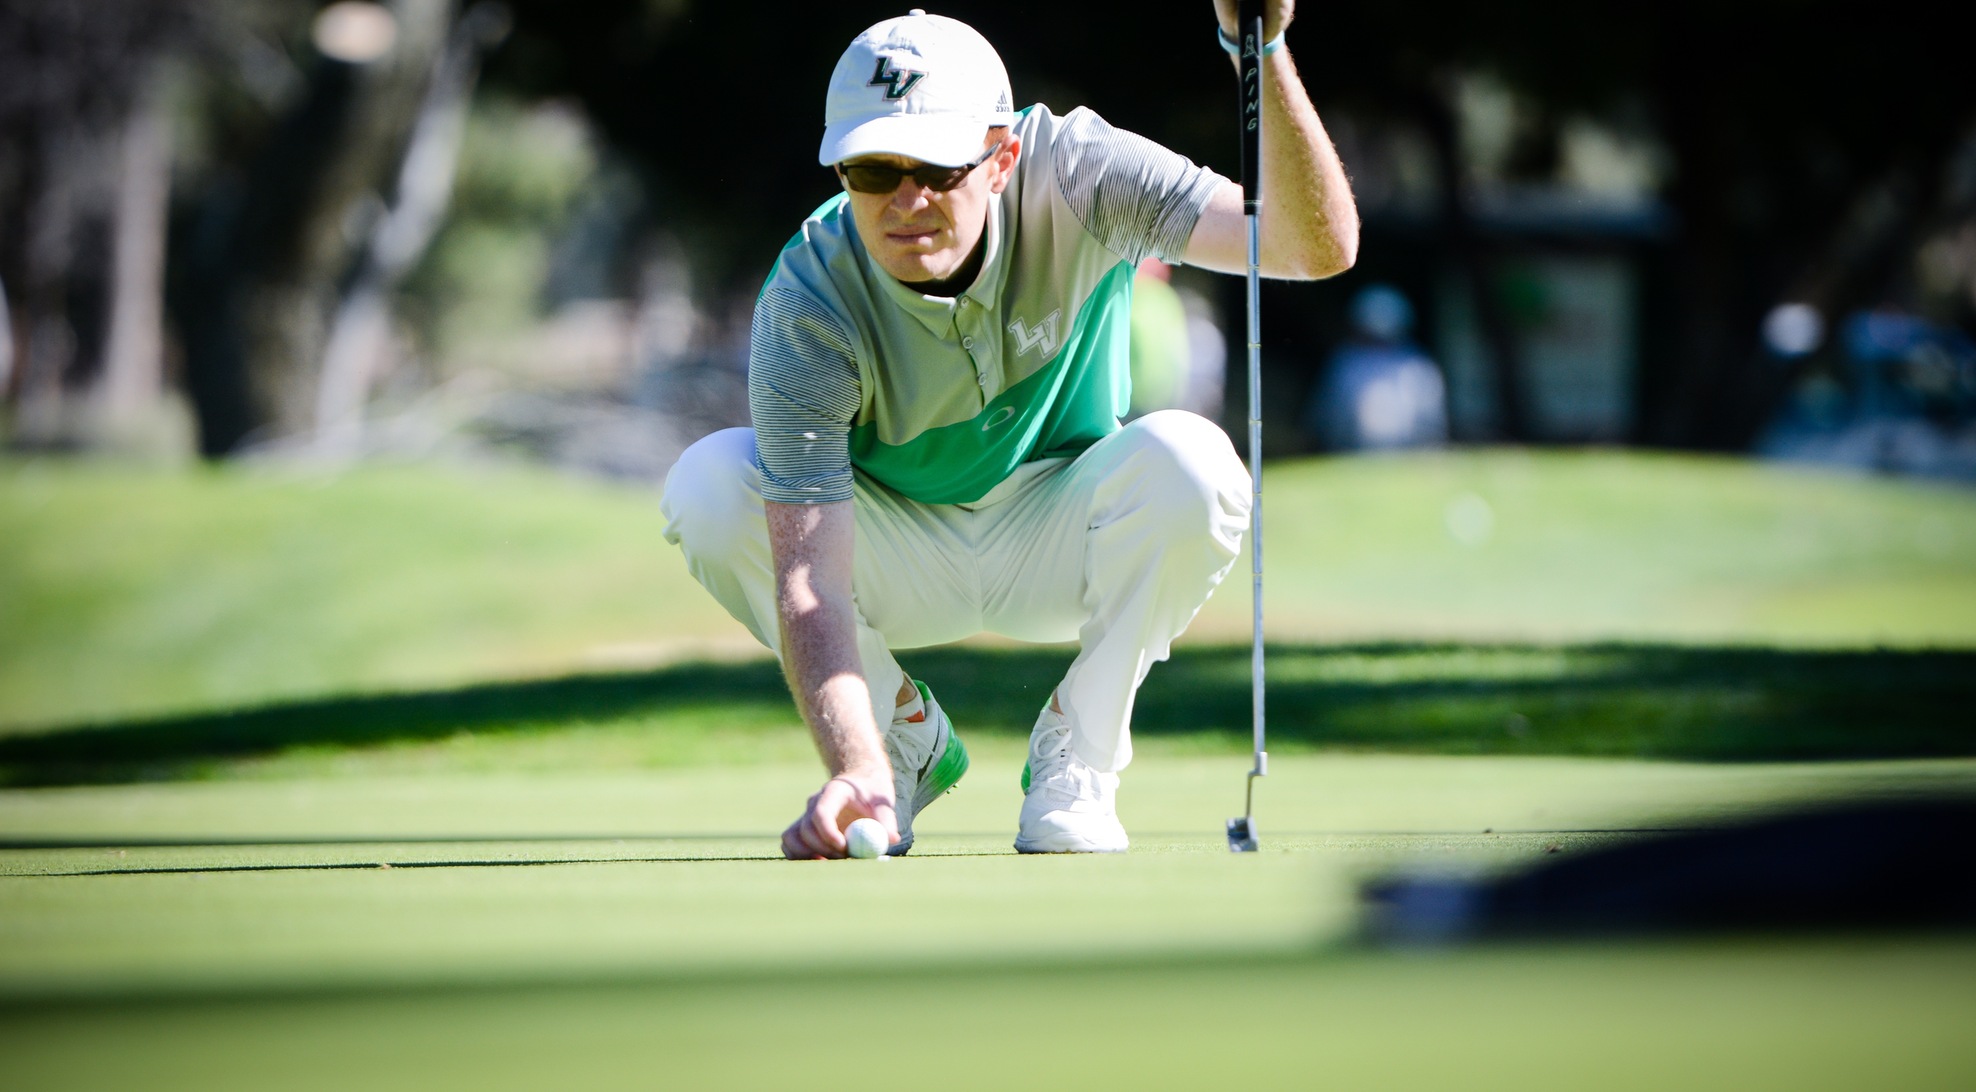 Spencer leads Men's Golf at Las Vegas Desert Classic